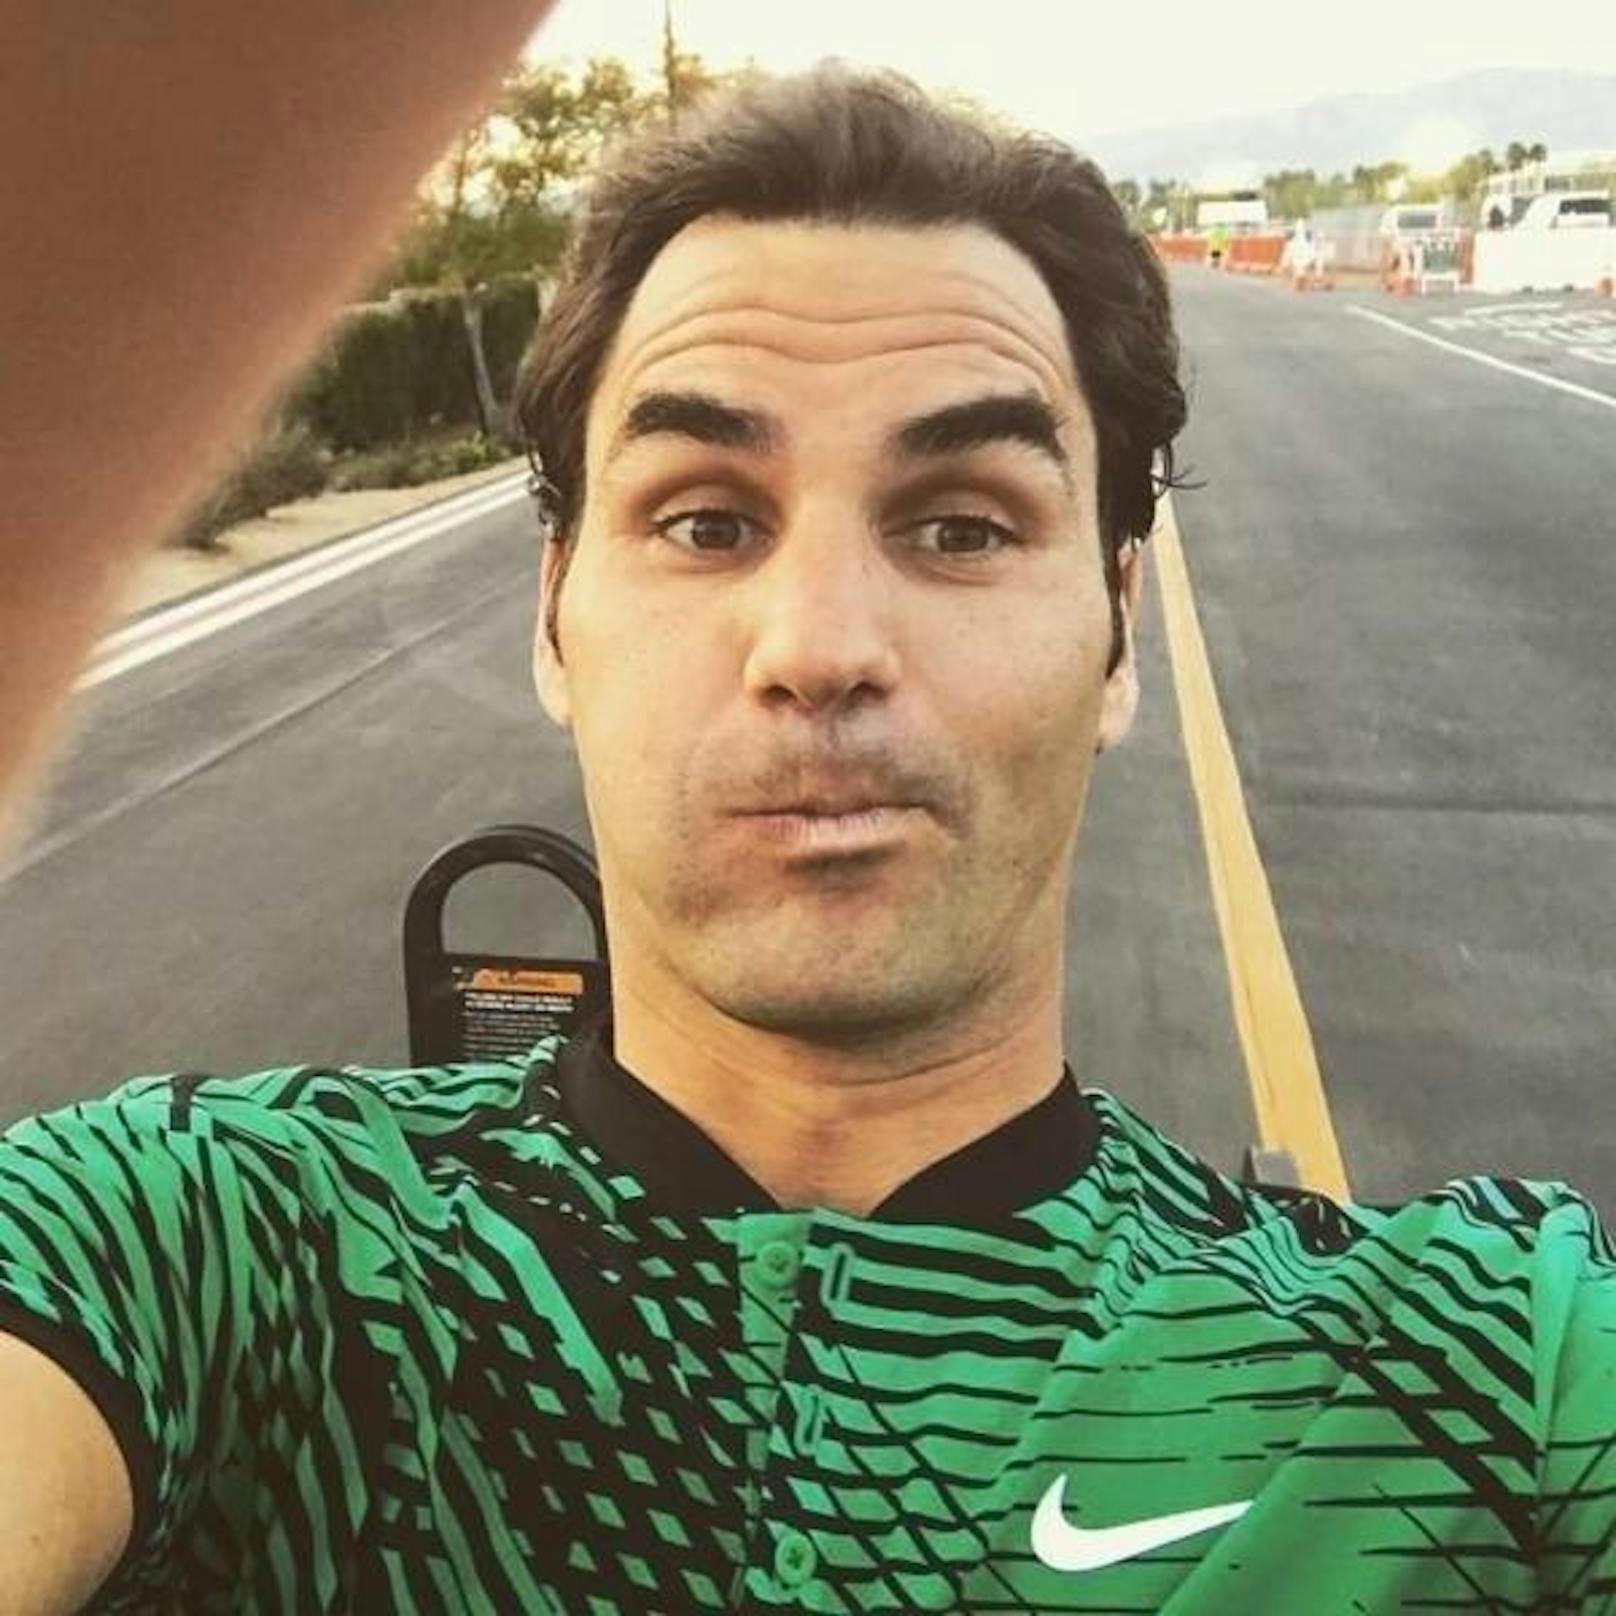 Roger Federer könnte in die vierte Kategorie der Selfies gehören, denn er postet gern auch Porträts von sich selber. Dass er dies tut, um sich selber zu bewerben, ist allerdings unwahrscheinlich, da ihn eh schon viele kennen.